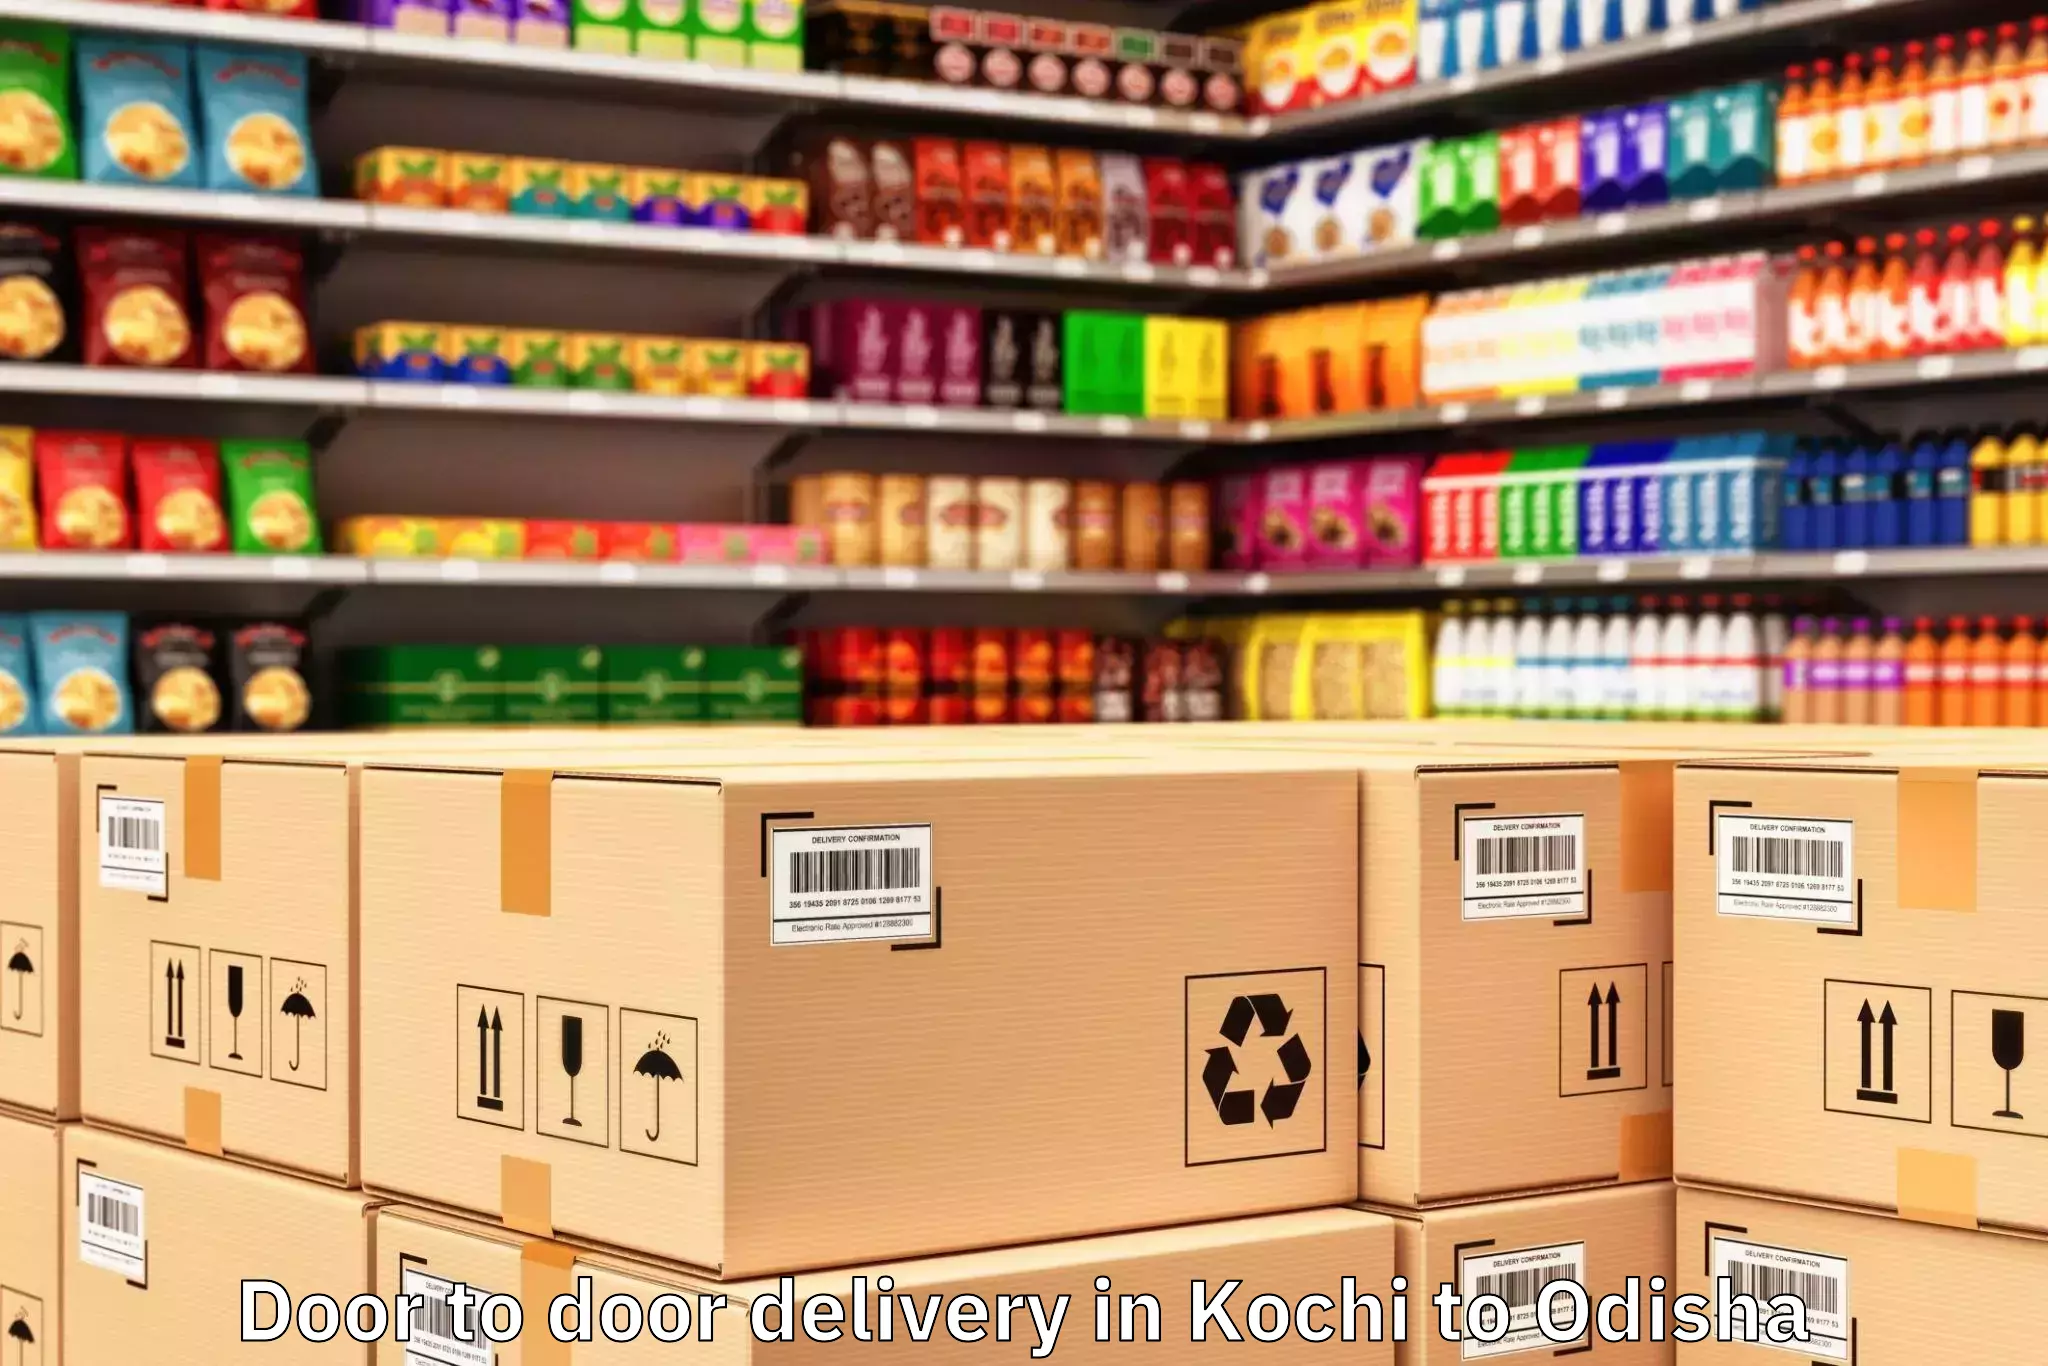 Leading Kochi to Jujomura Door To Door Delivery Provider